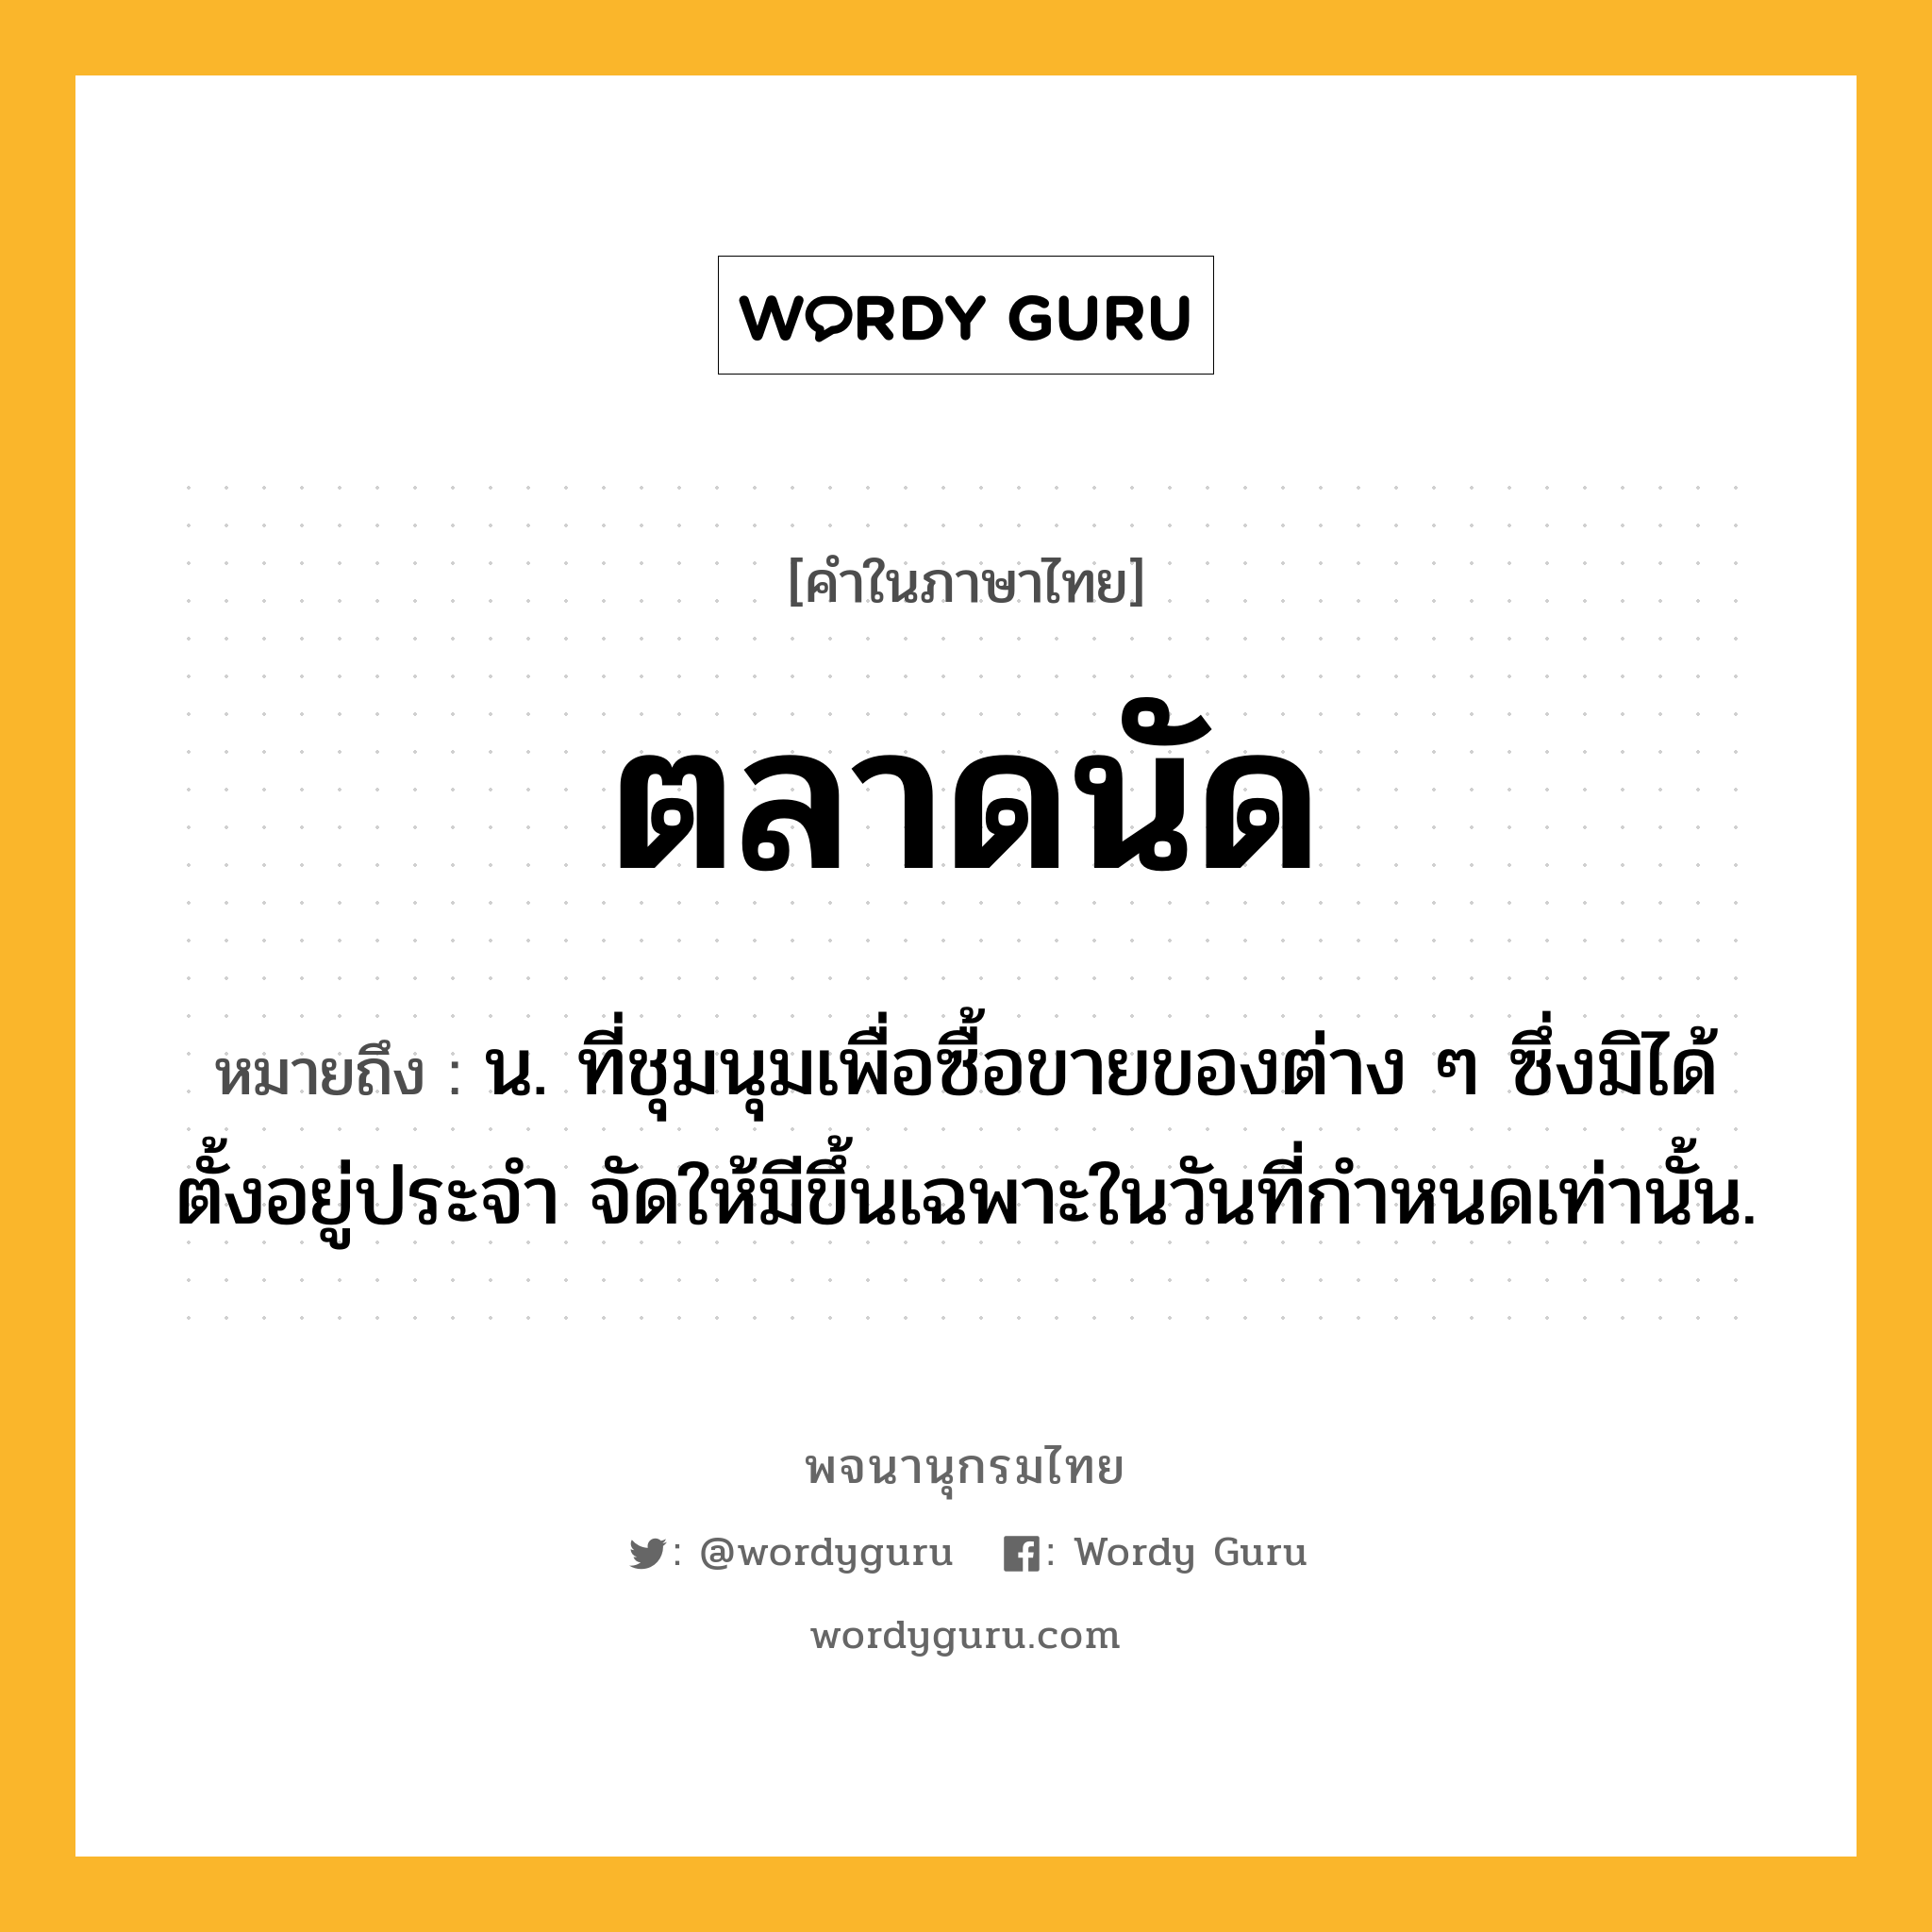 ตลาดนัด หมายถึงอะไร?, คำในภาษาไทย ตลาดนัด หมายถึง น. ที่ชุมนุมเพื่อซื้อขายของต่าง ๆ ซึ่งมิได้ตั้งอยู่ประจํา จัดให้มีขึ้นเฉพาะในวันที่กําหนดเท่านั้น.